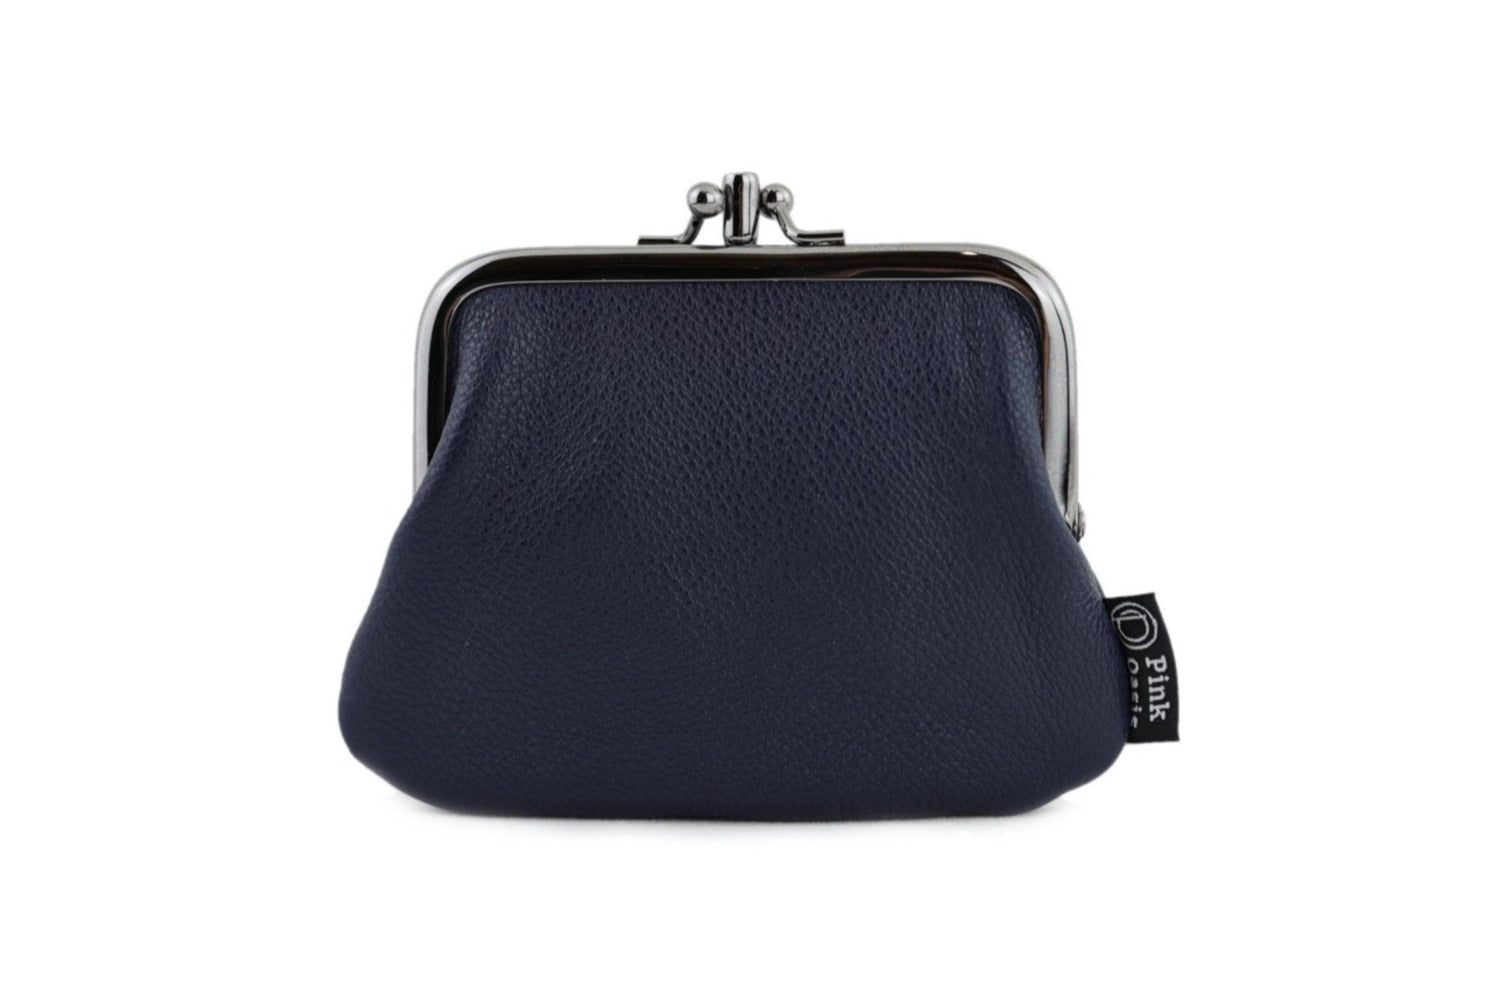 KANGAROO KINGDOM luxury brand women wallets genuine leather long lady  clutch purse zipper card holder wallet